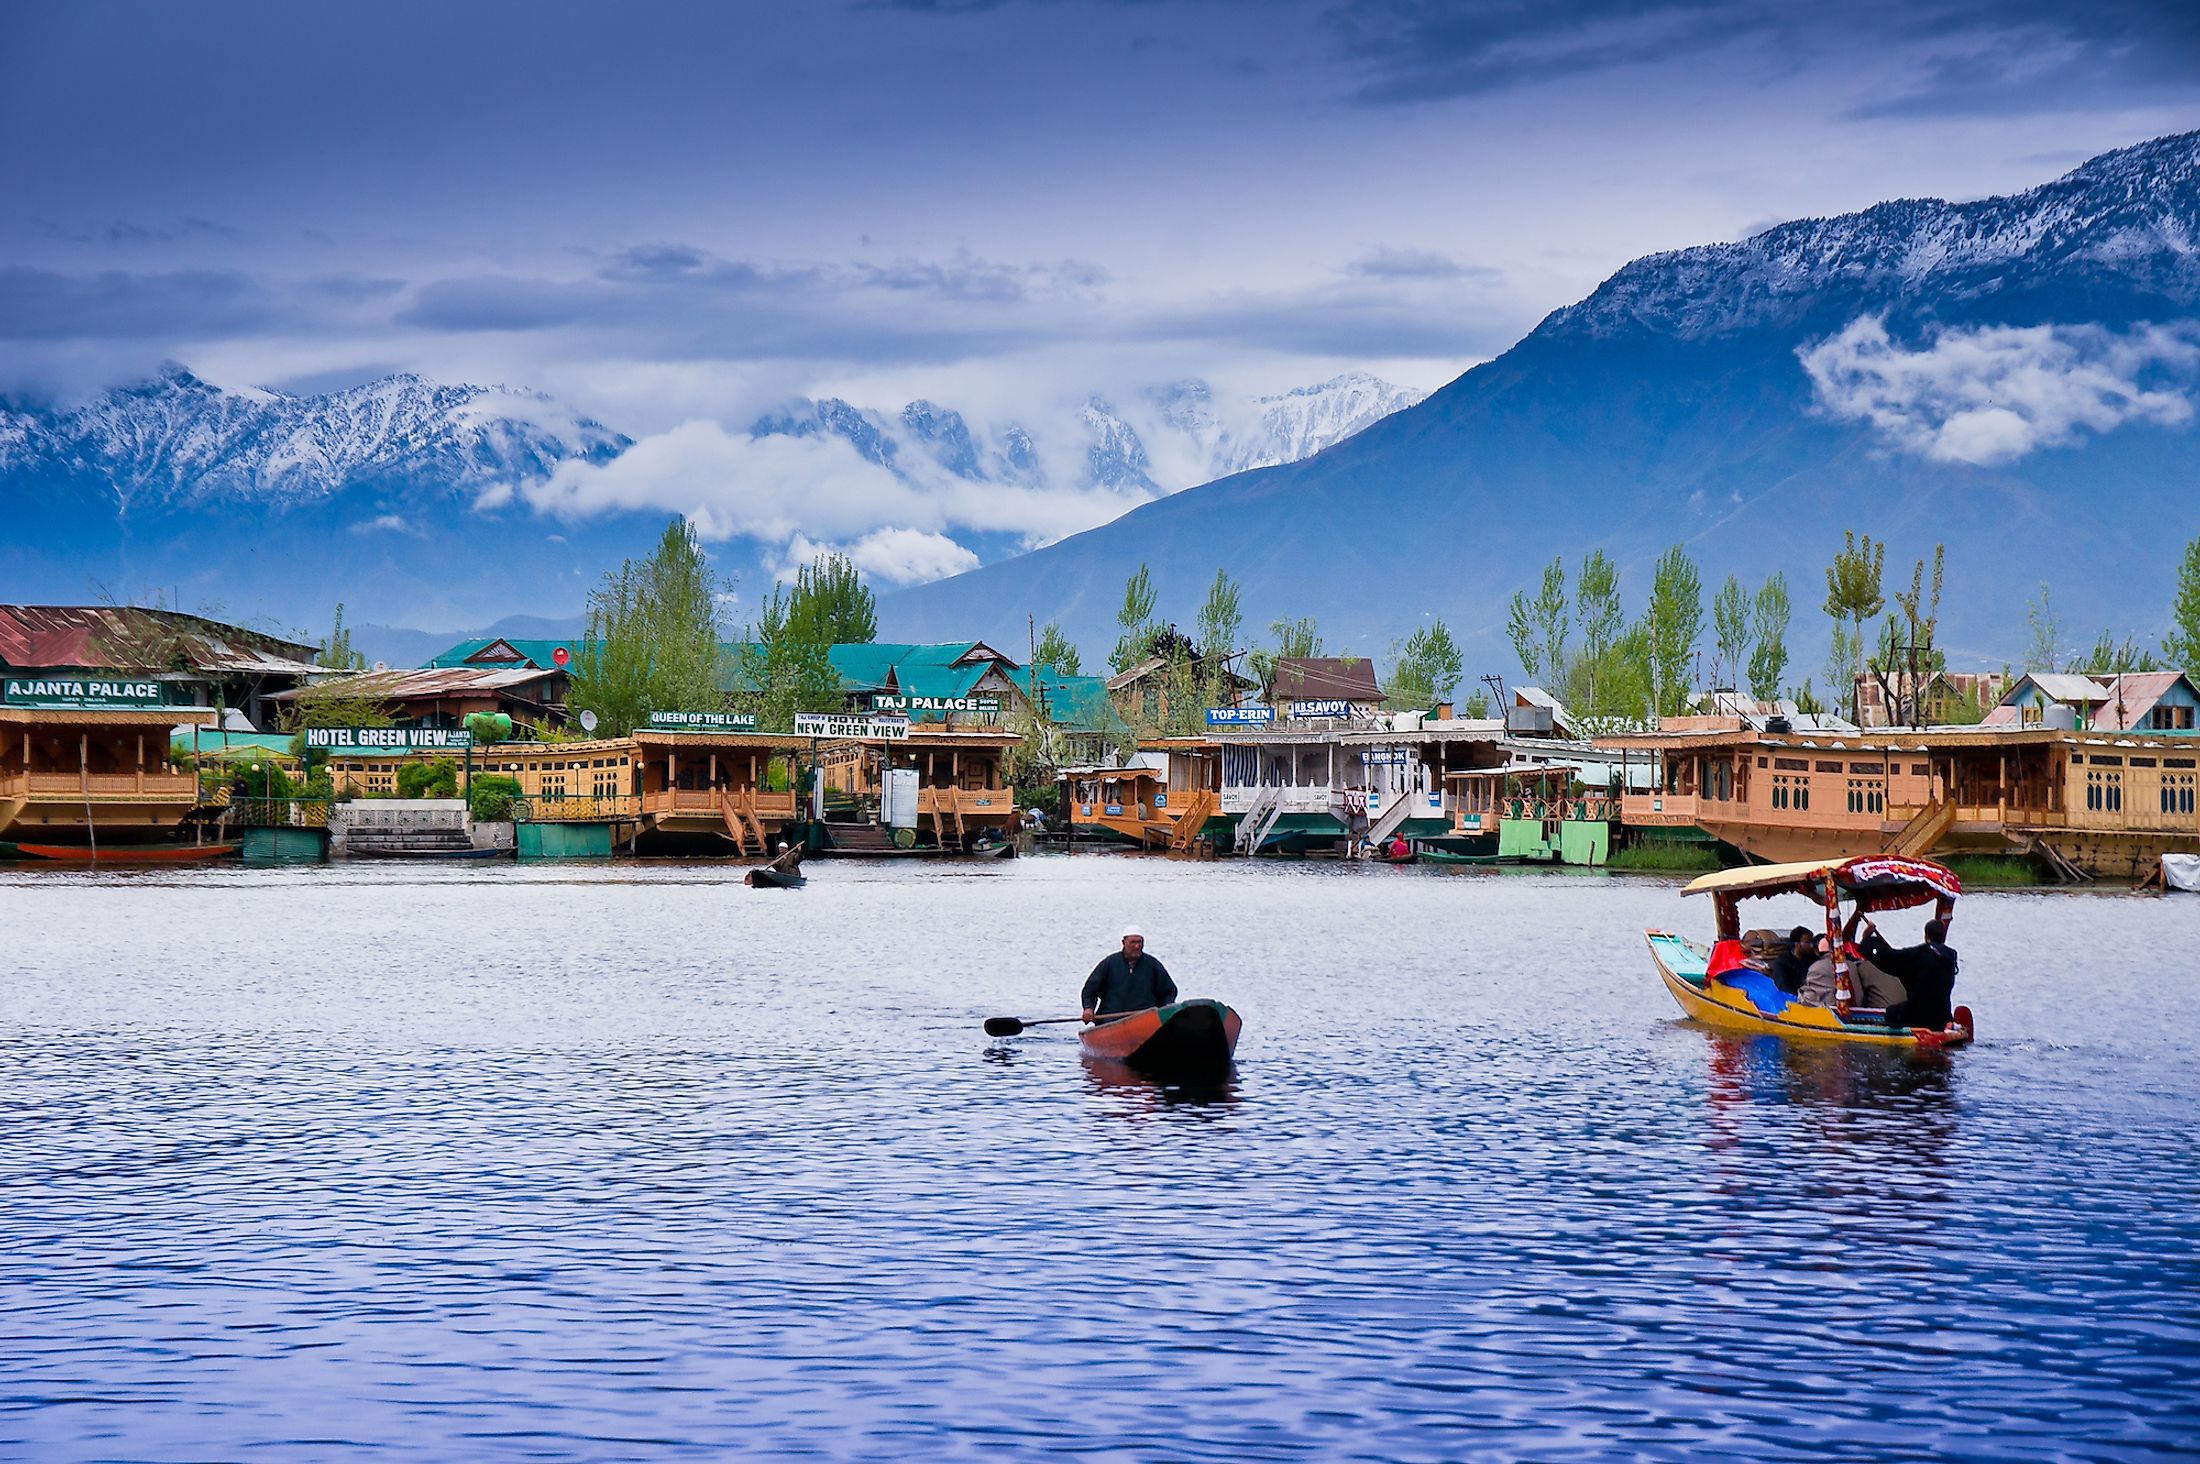 Kashmir - A Paradise On Earth